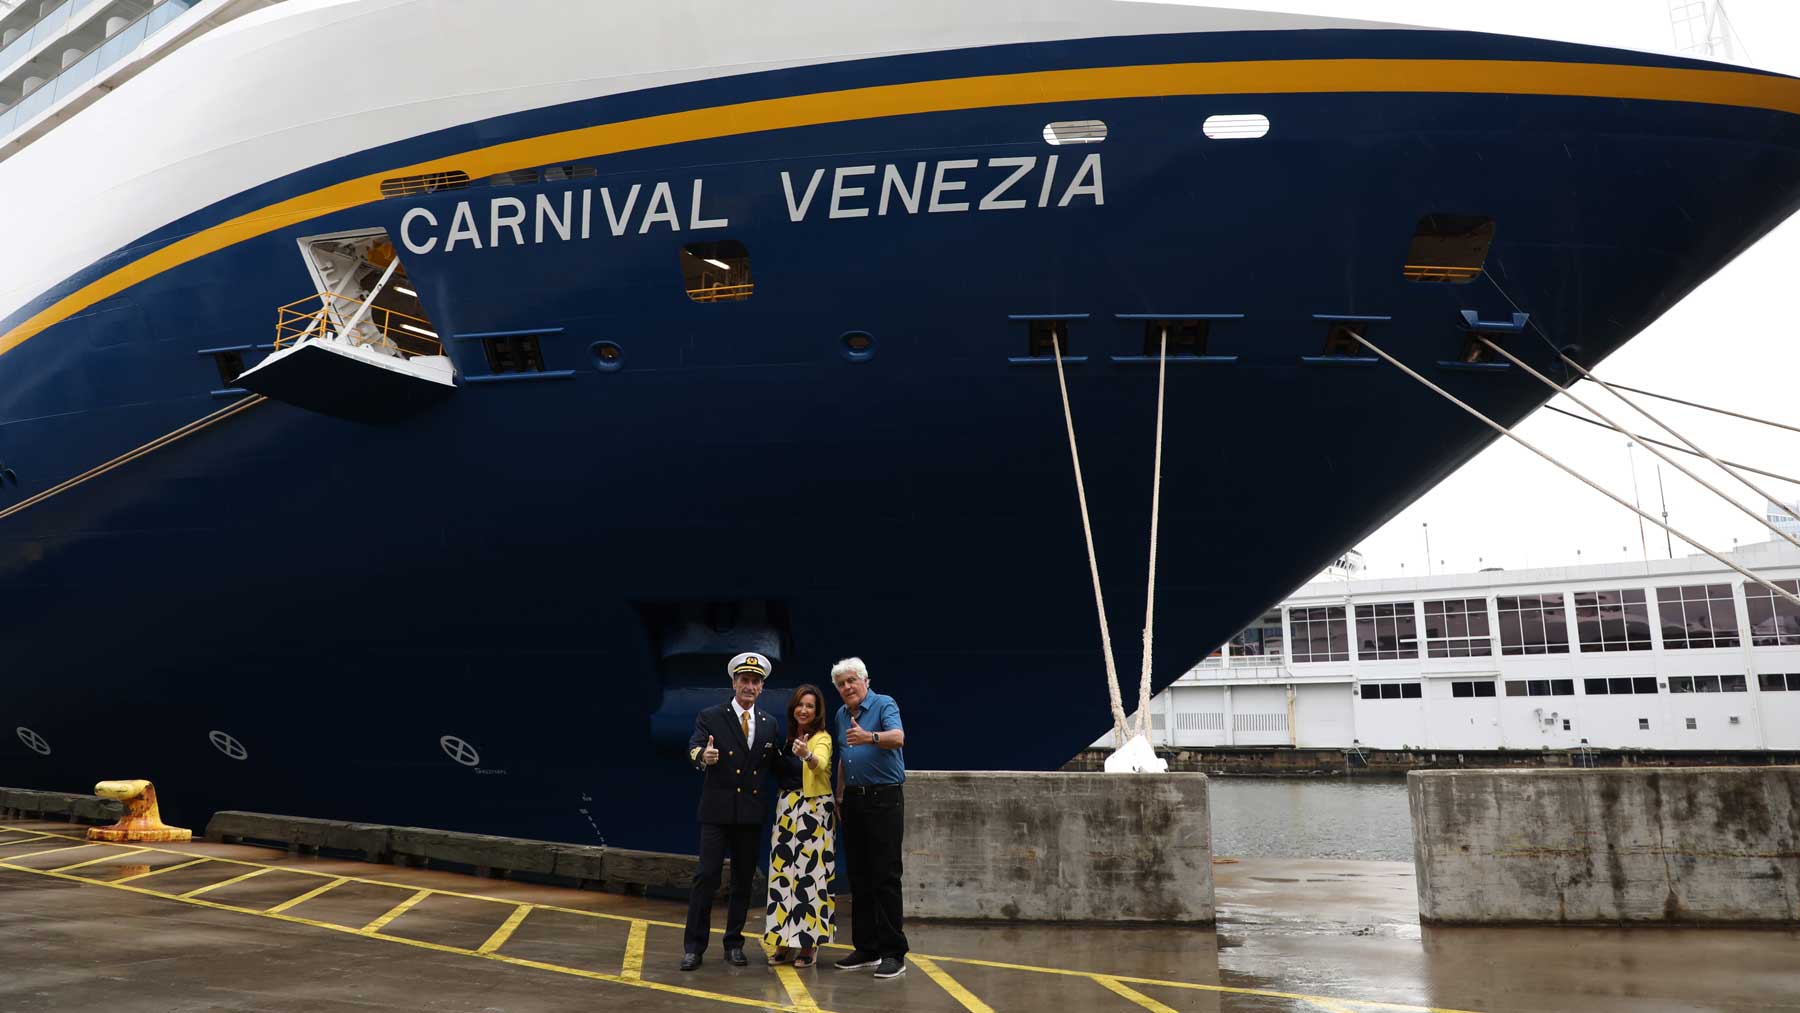 Carnival Venezia docked in New York